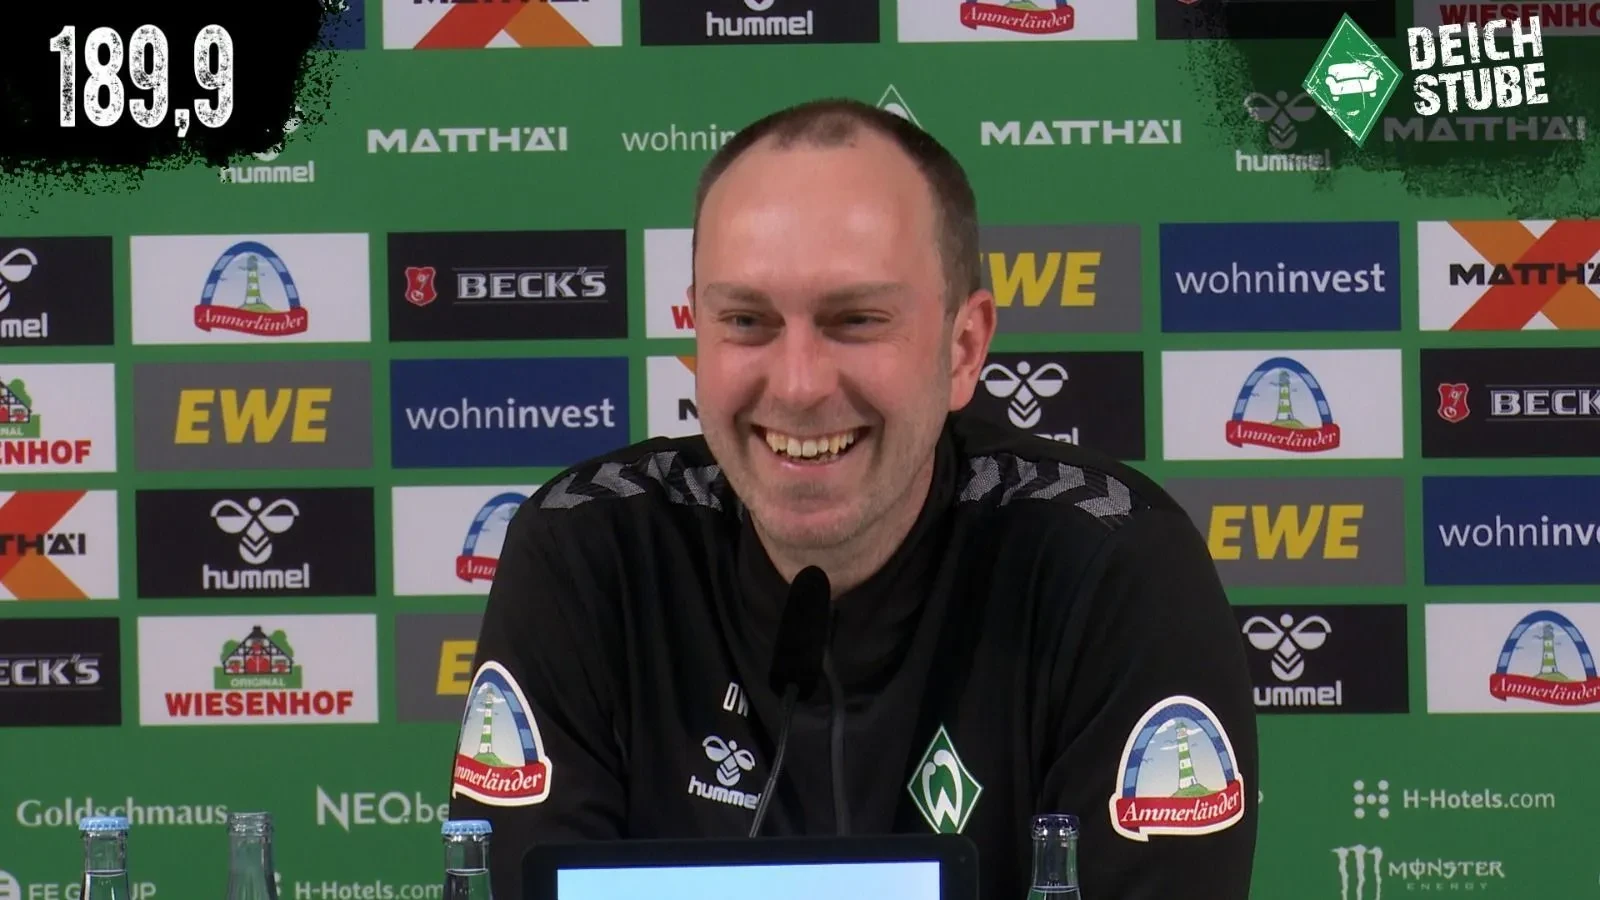 Vor Werder Bremen gegen den FC Augsburg: Die Highlights der Pressekonferenz in 189,9 Sekunden!